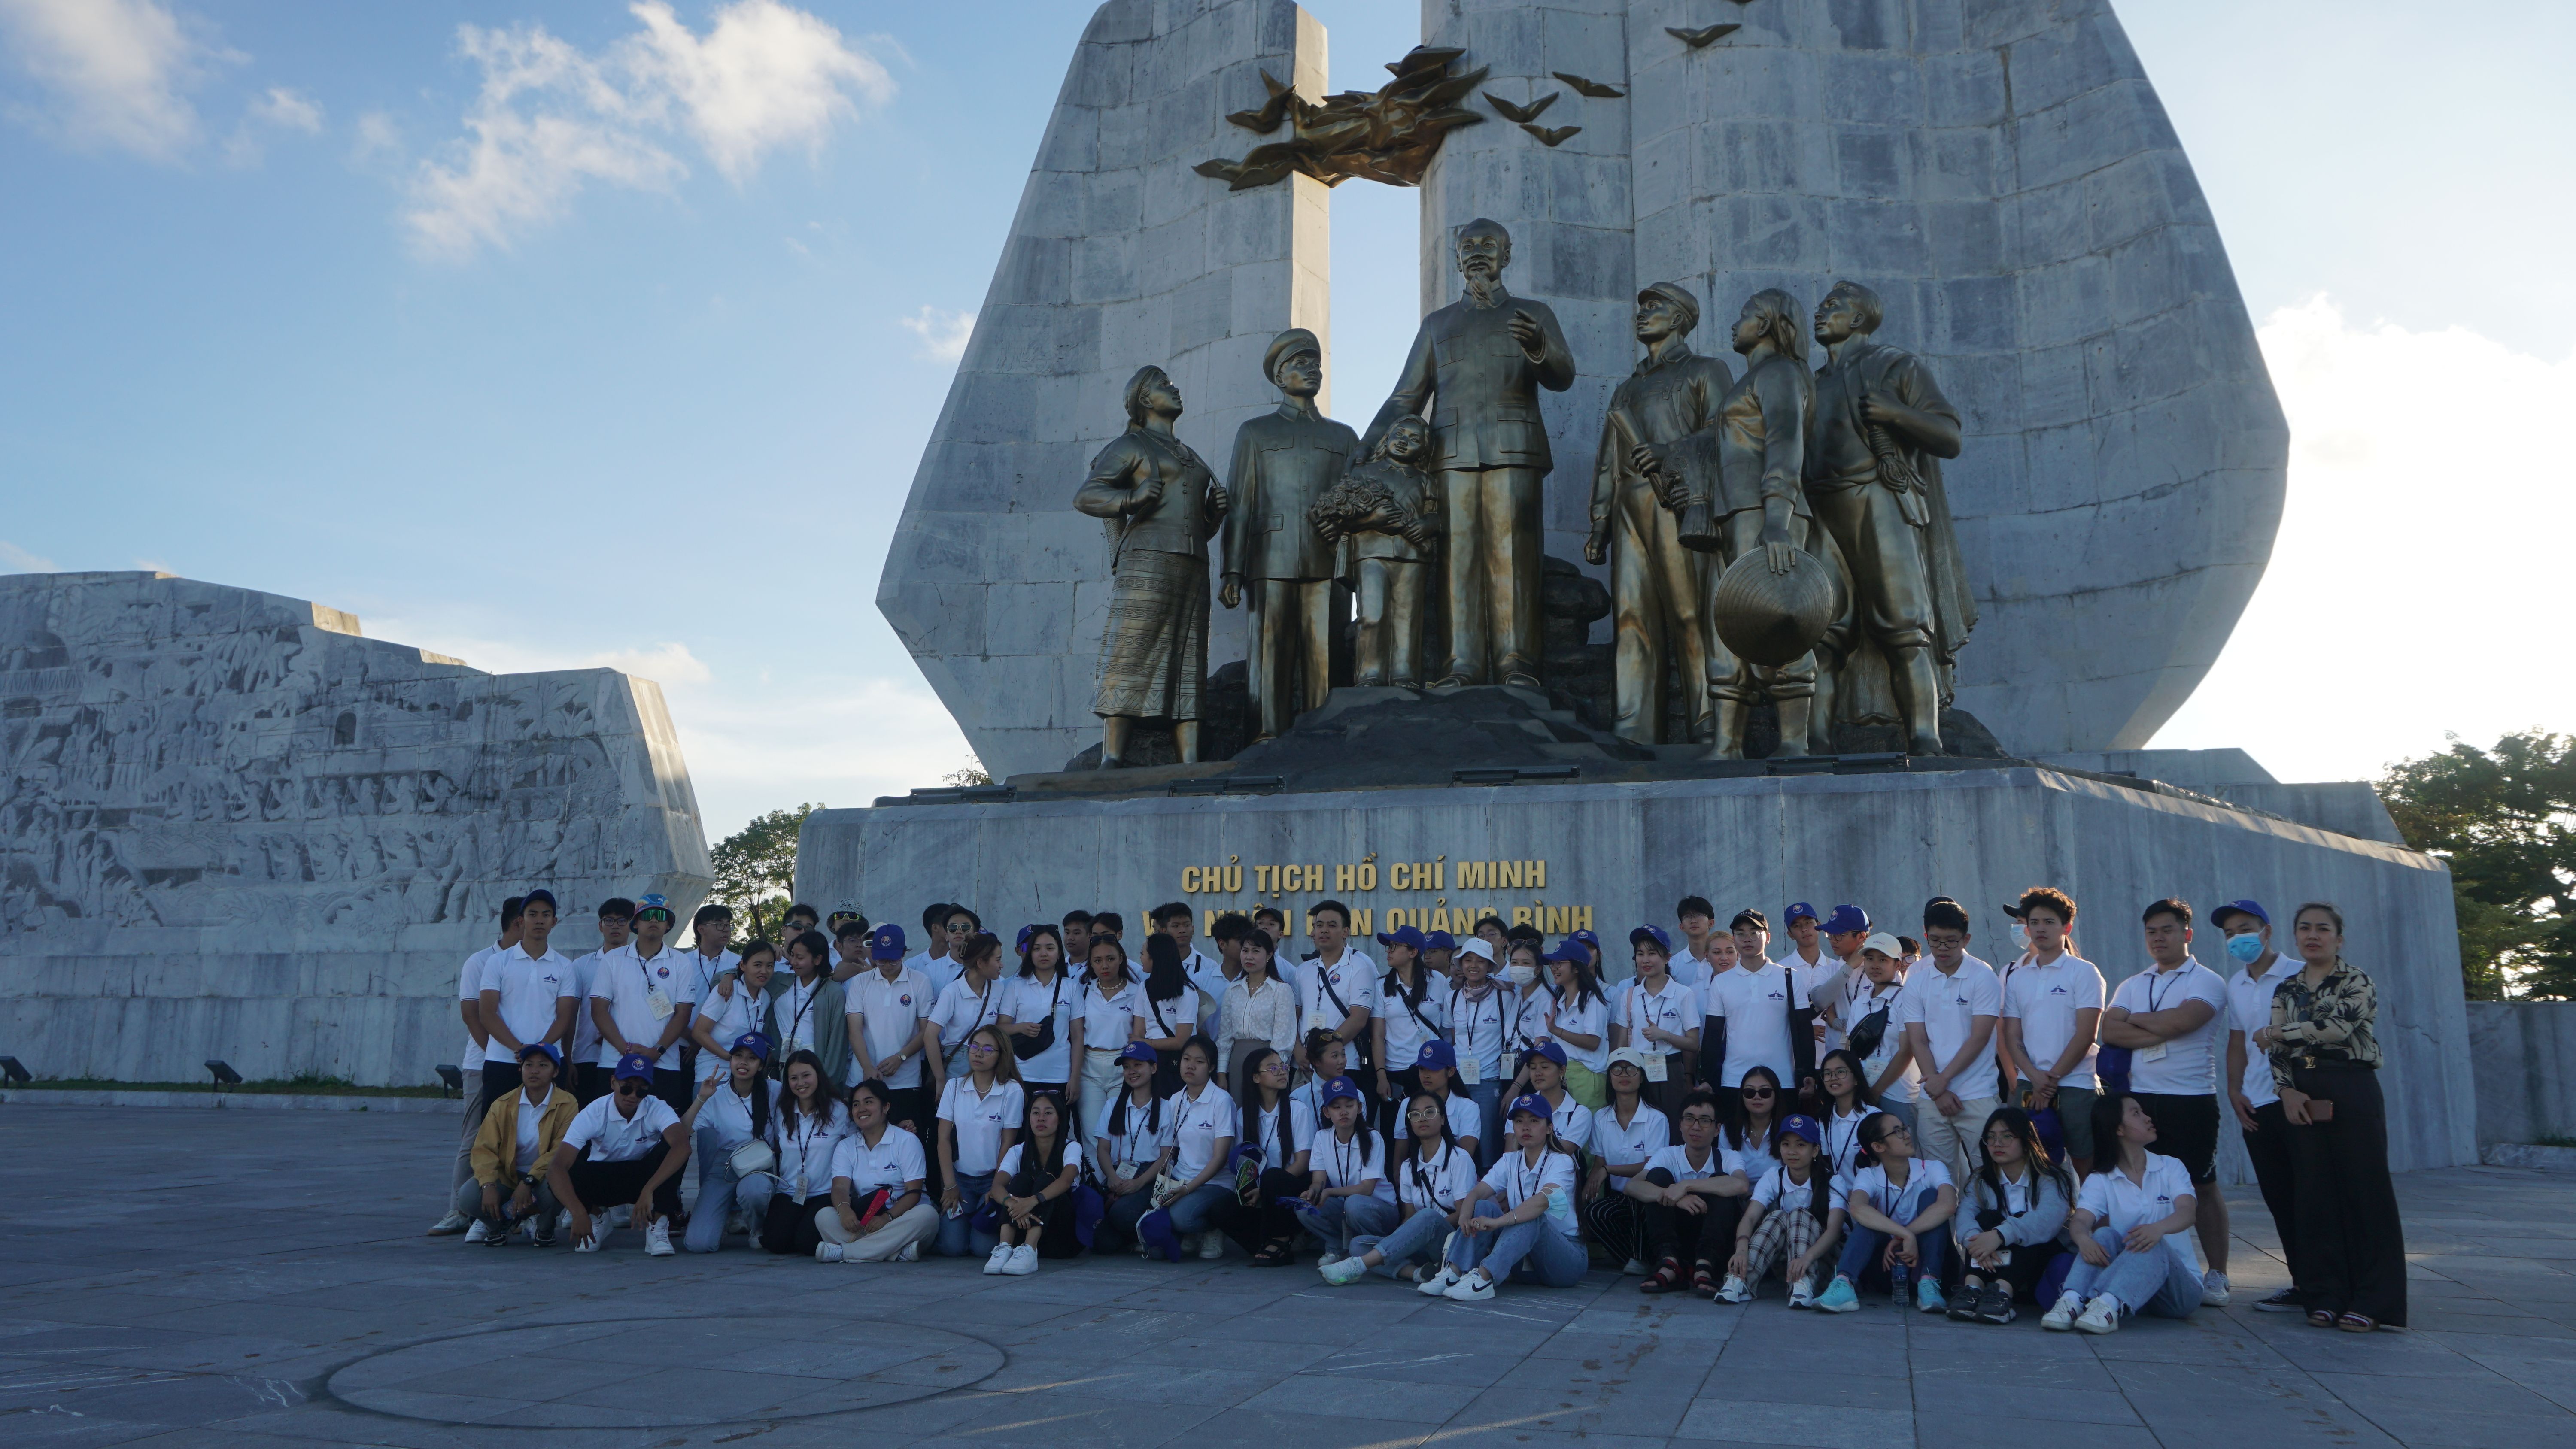 : Đoàn đại biểu tham dự “Trại hè Việt Nam 2022” chụp ảnh lưu niệm dưới tượng đài Bác Hồ.